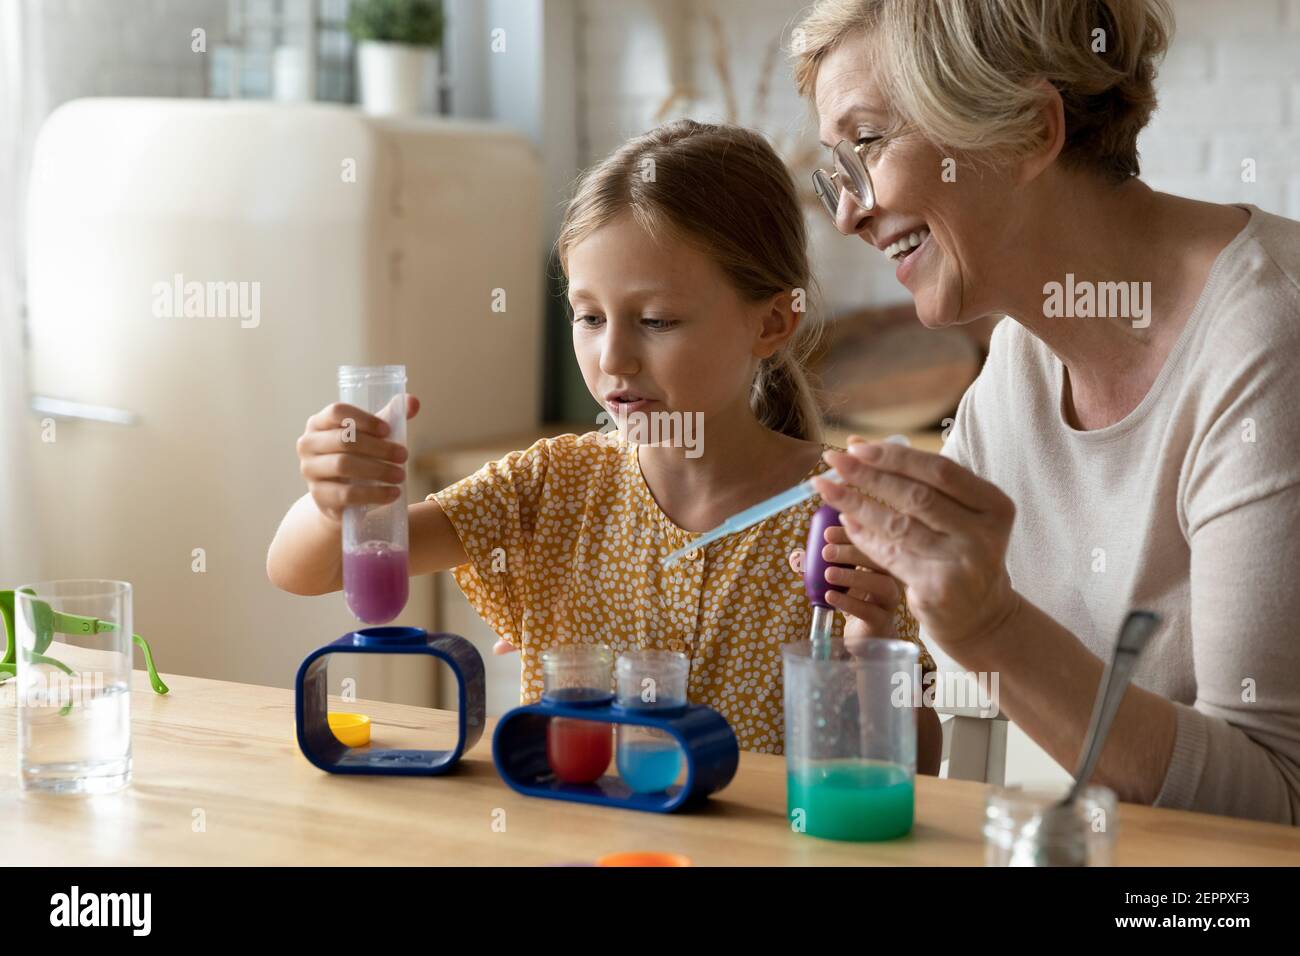 Femme mature tuteur enseigner la chimie de petite fille dans le jeu d'éducation Banque D'Images